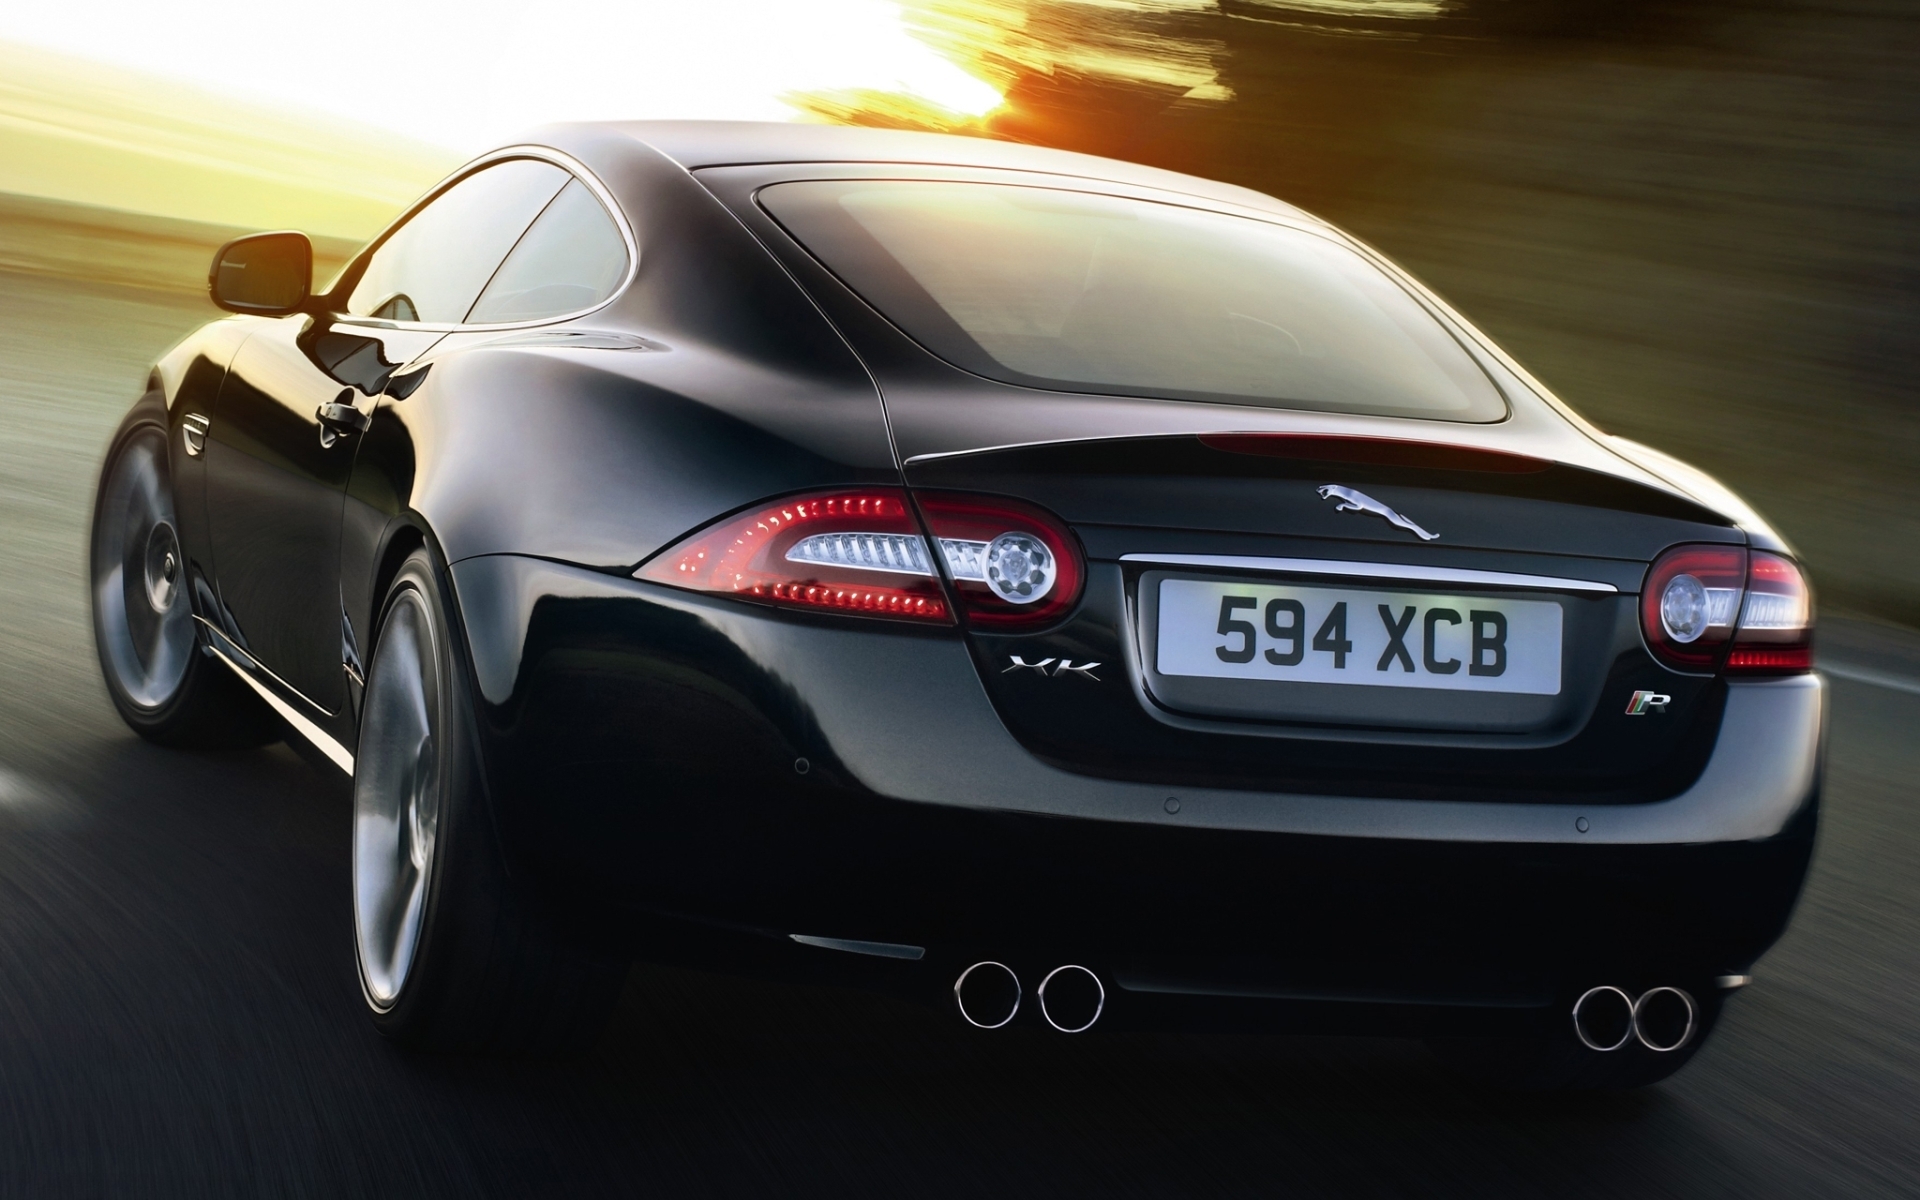 Descarga gratuita de fondo de pantalla para móvil de Jaguar, Vehículos.